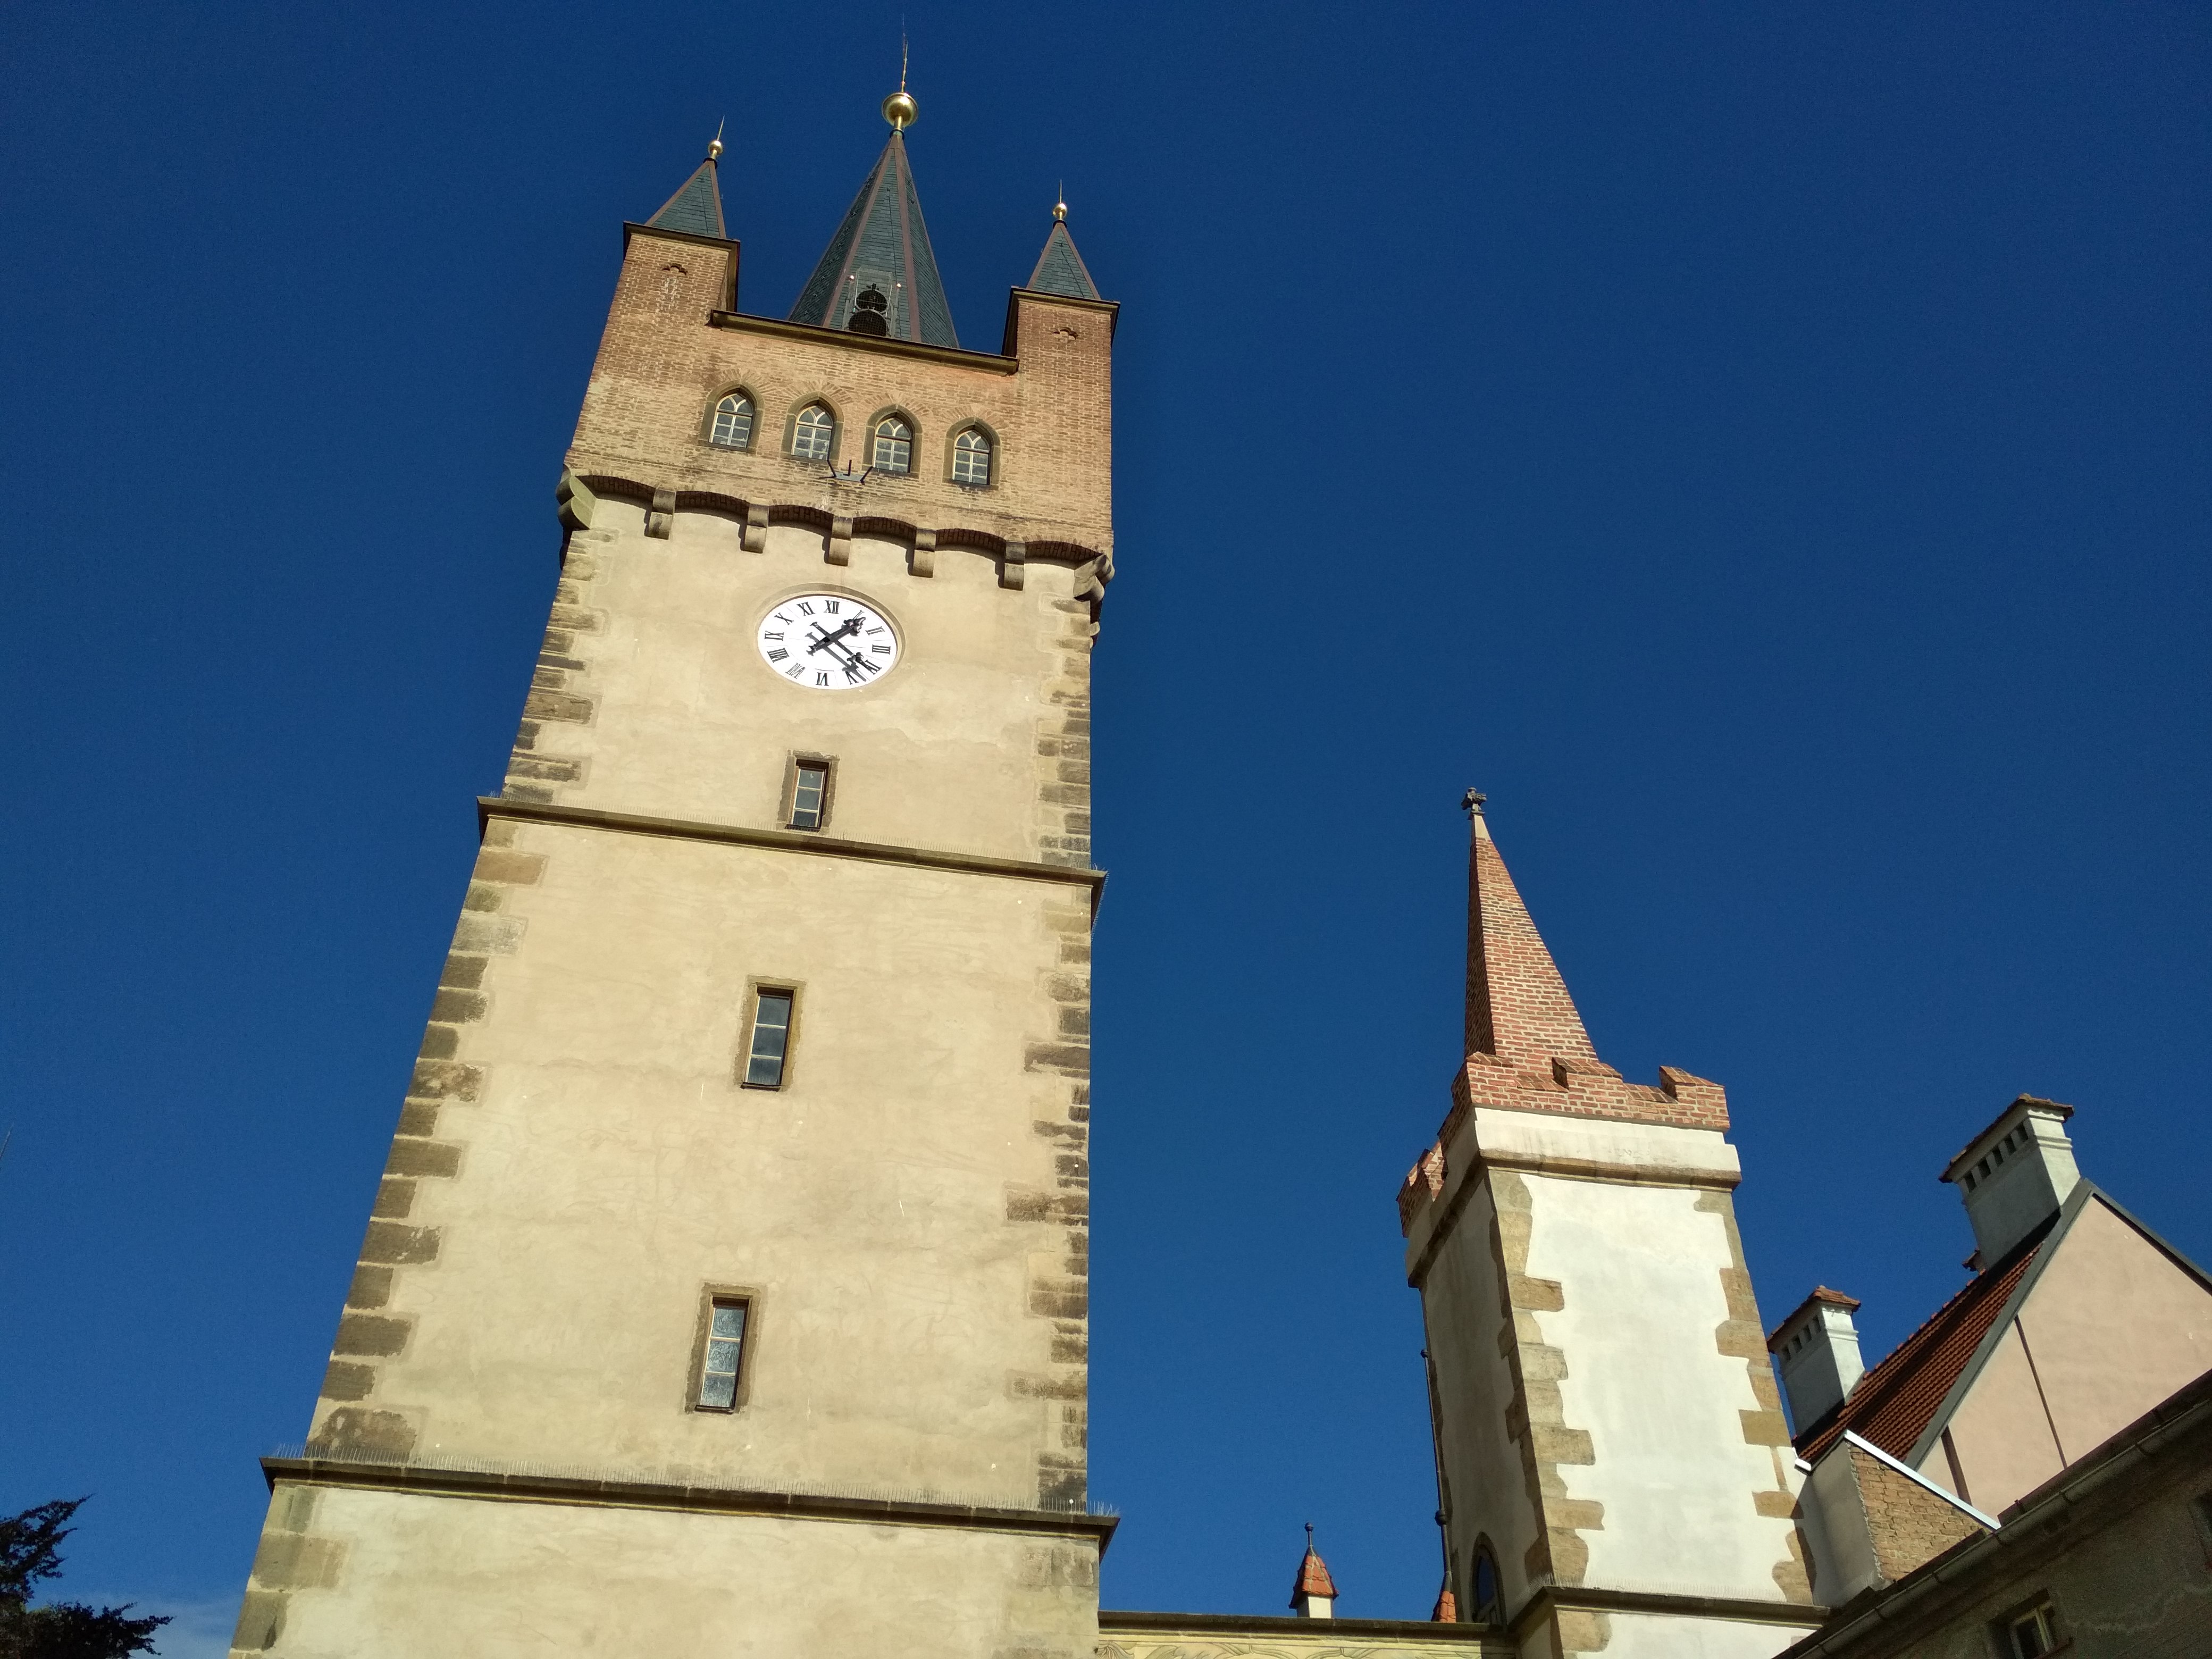 Užijte si vyhlídku z Pražské věže